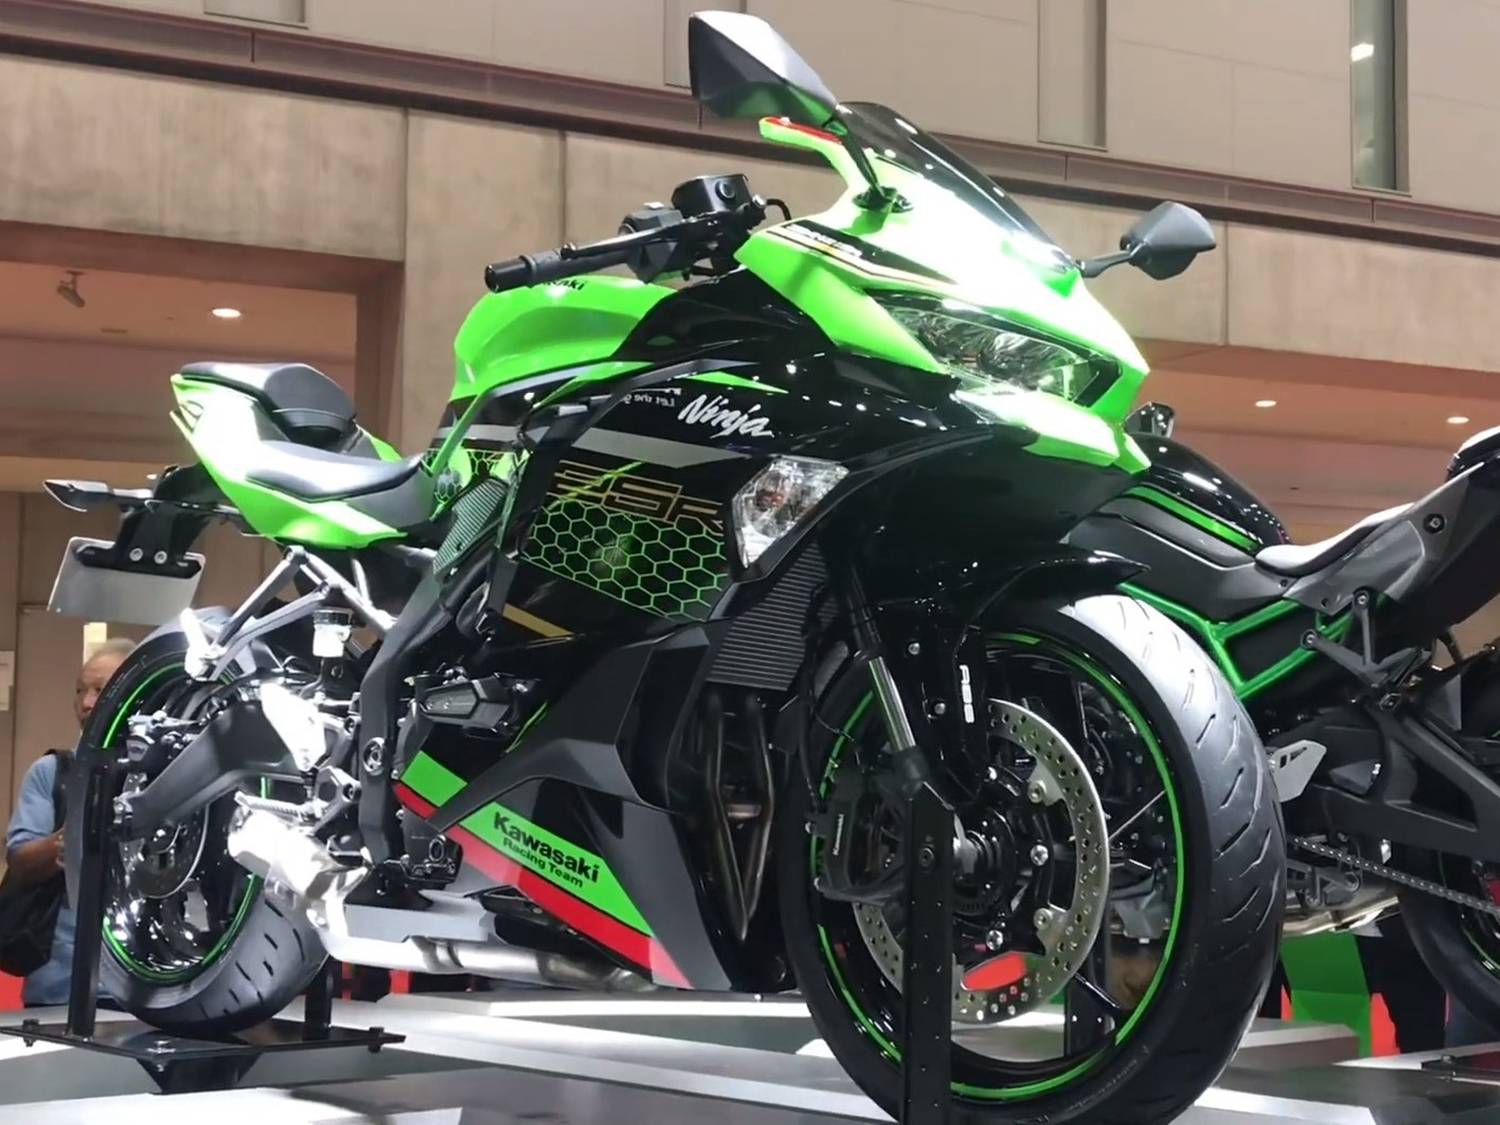 2020 Kawasaki Ninja Zx 25r First Look Cycle World